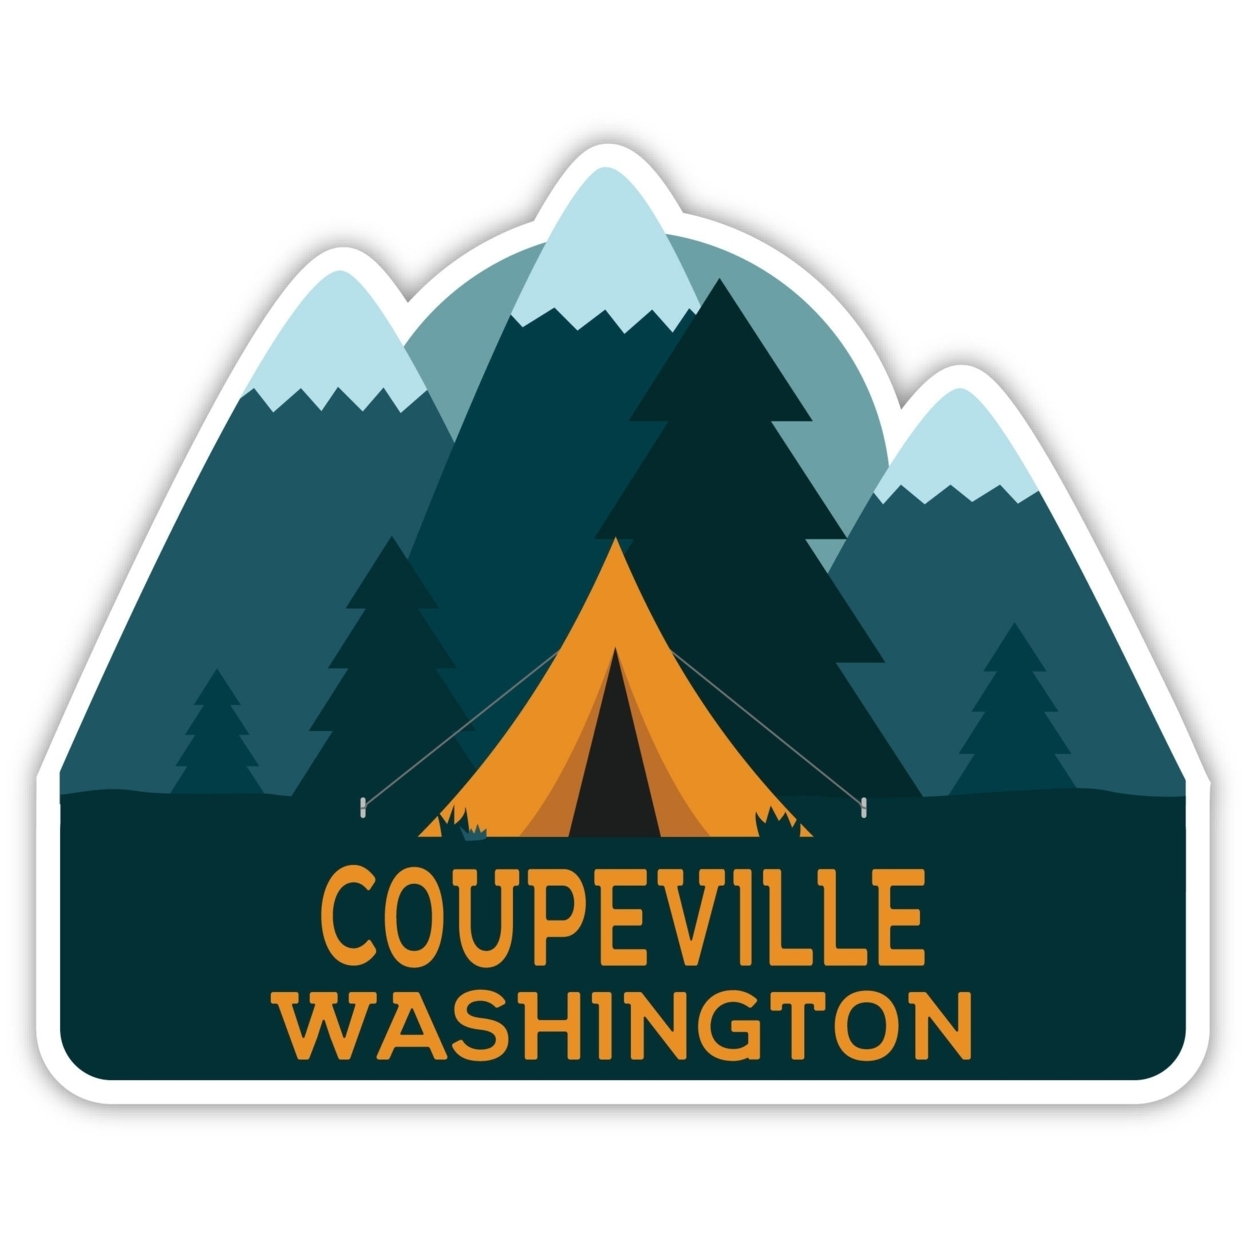 Coupeville Washington Souvenir Decorative Stickers (Choose Theme And Size) - Single Unit, 4-Inch, Tent